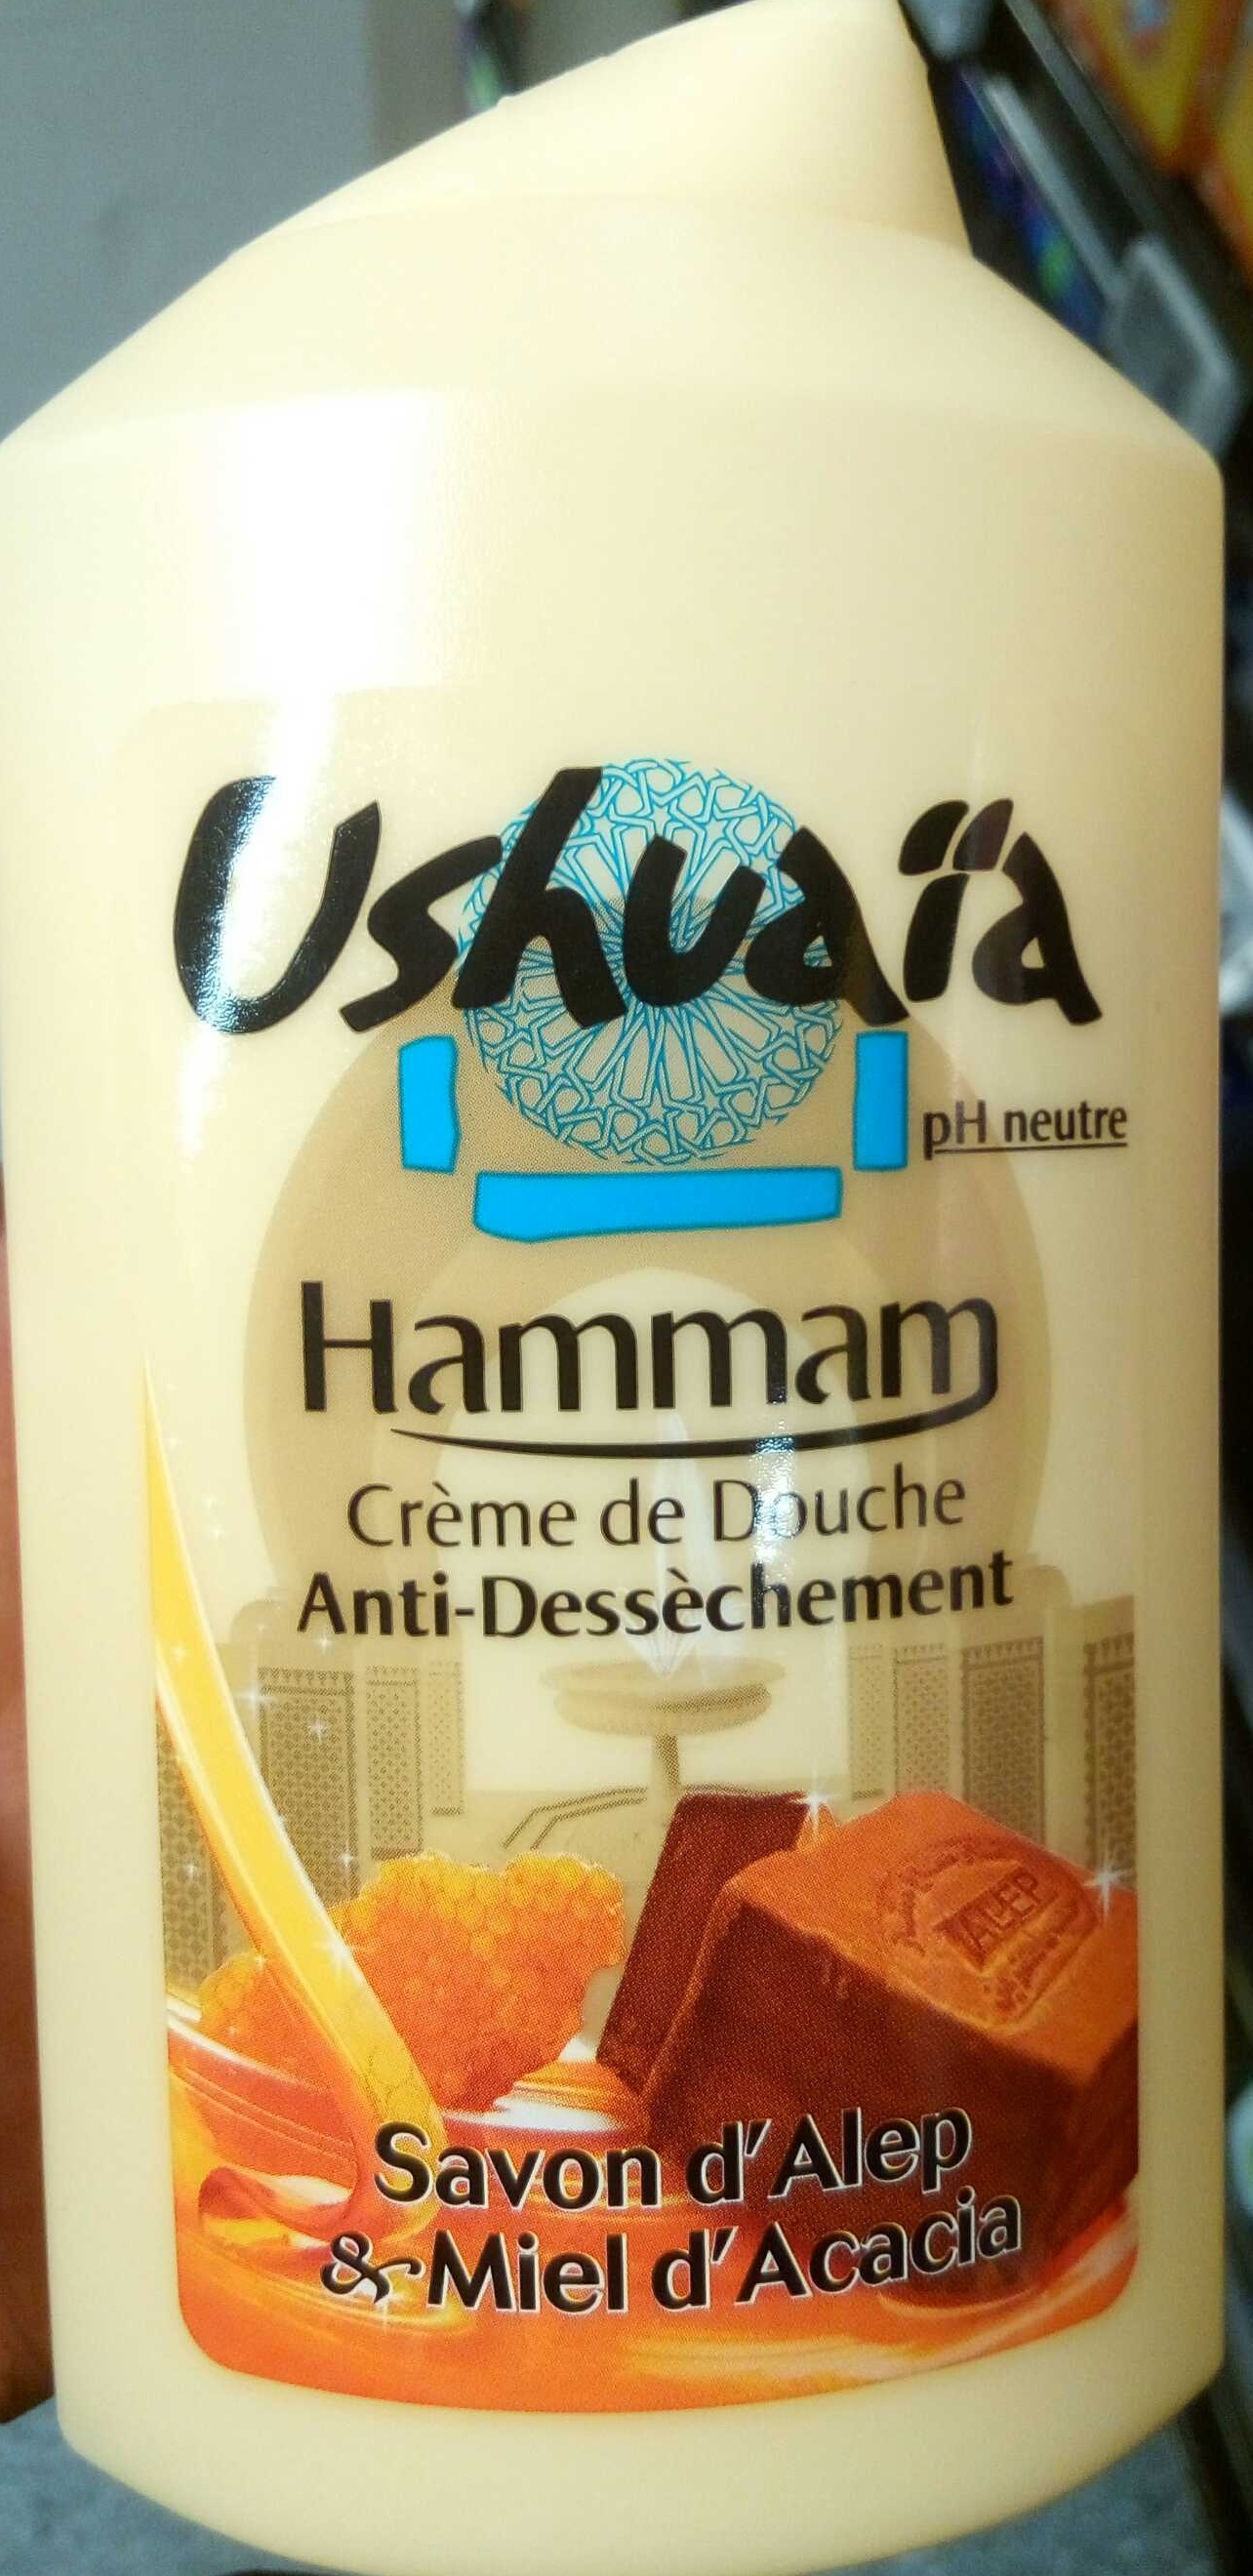 Crème de Douche anti-dessèchement Hammam Savon d'Alep & Miel d'Acacia - Produit - fr